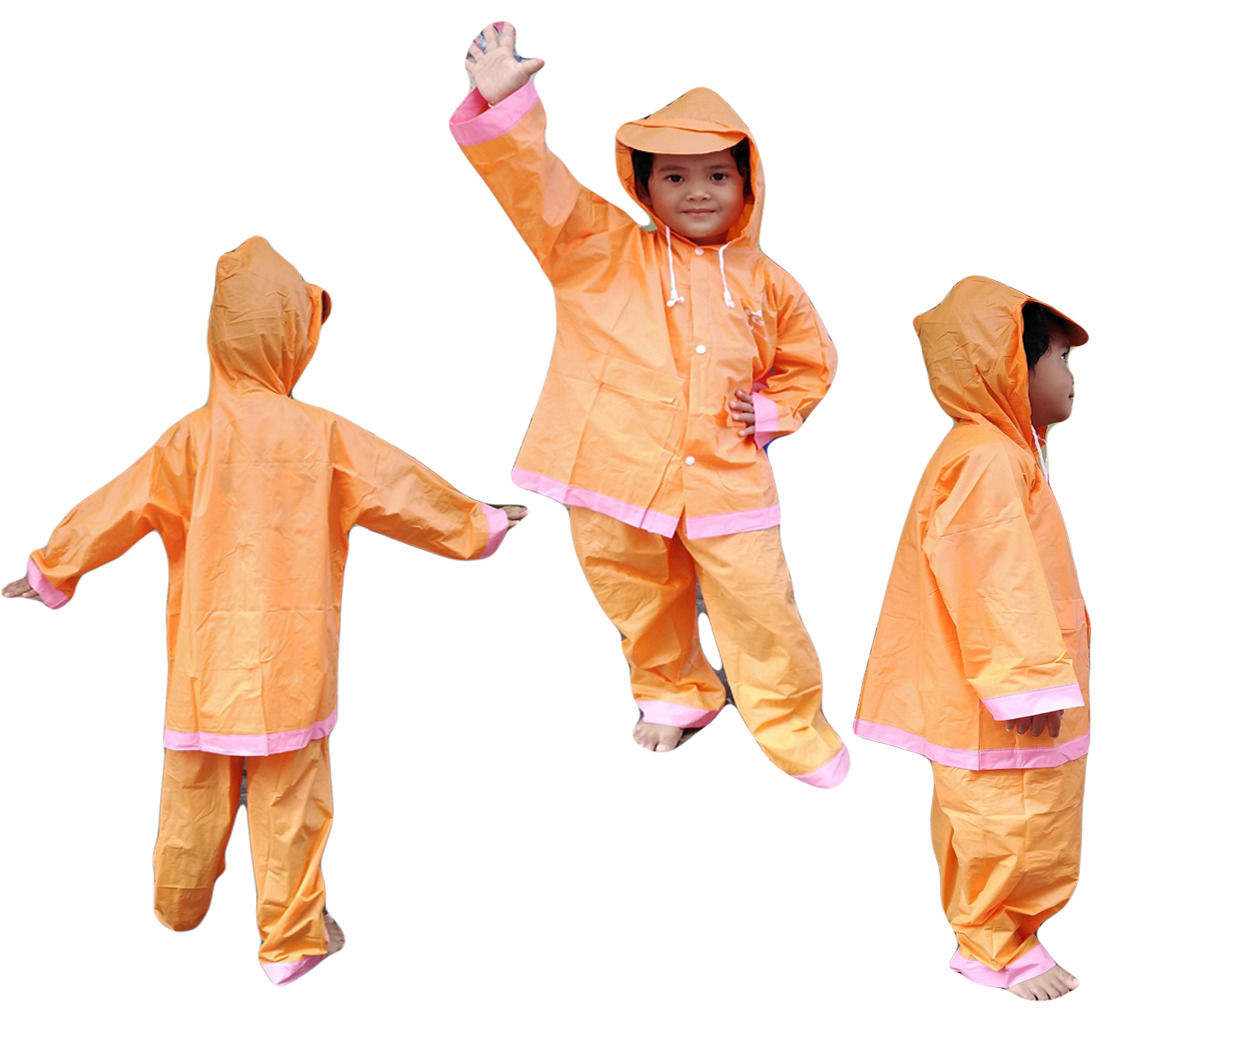 เสื้อกันฝนสำหรับเด็ก AS0066 Size 3 ผ้าหนา แยกส่วน เสื้อ และกางเกง พร้อมซองใส่ ใส่ได้ทั้งเด็กผู้ชายและเด็กผู้หญิง มีหลายสีให้เลือก